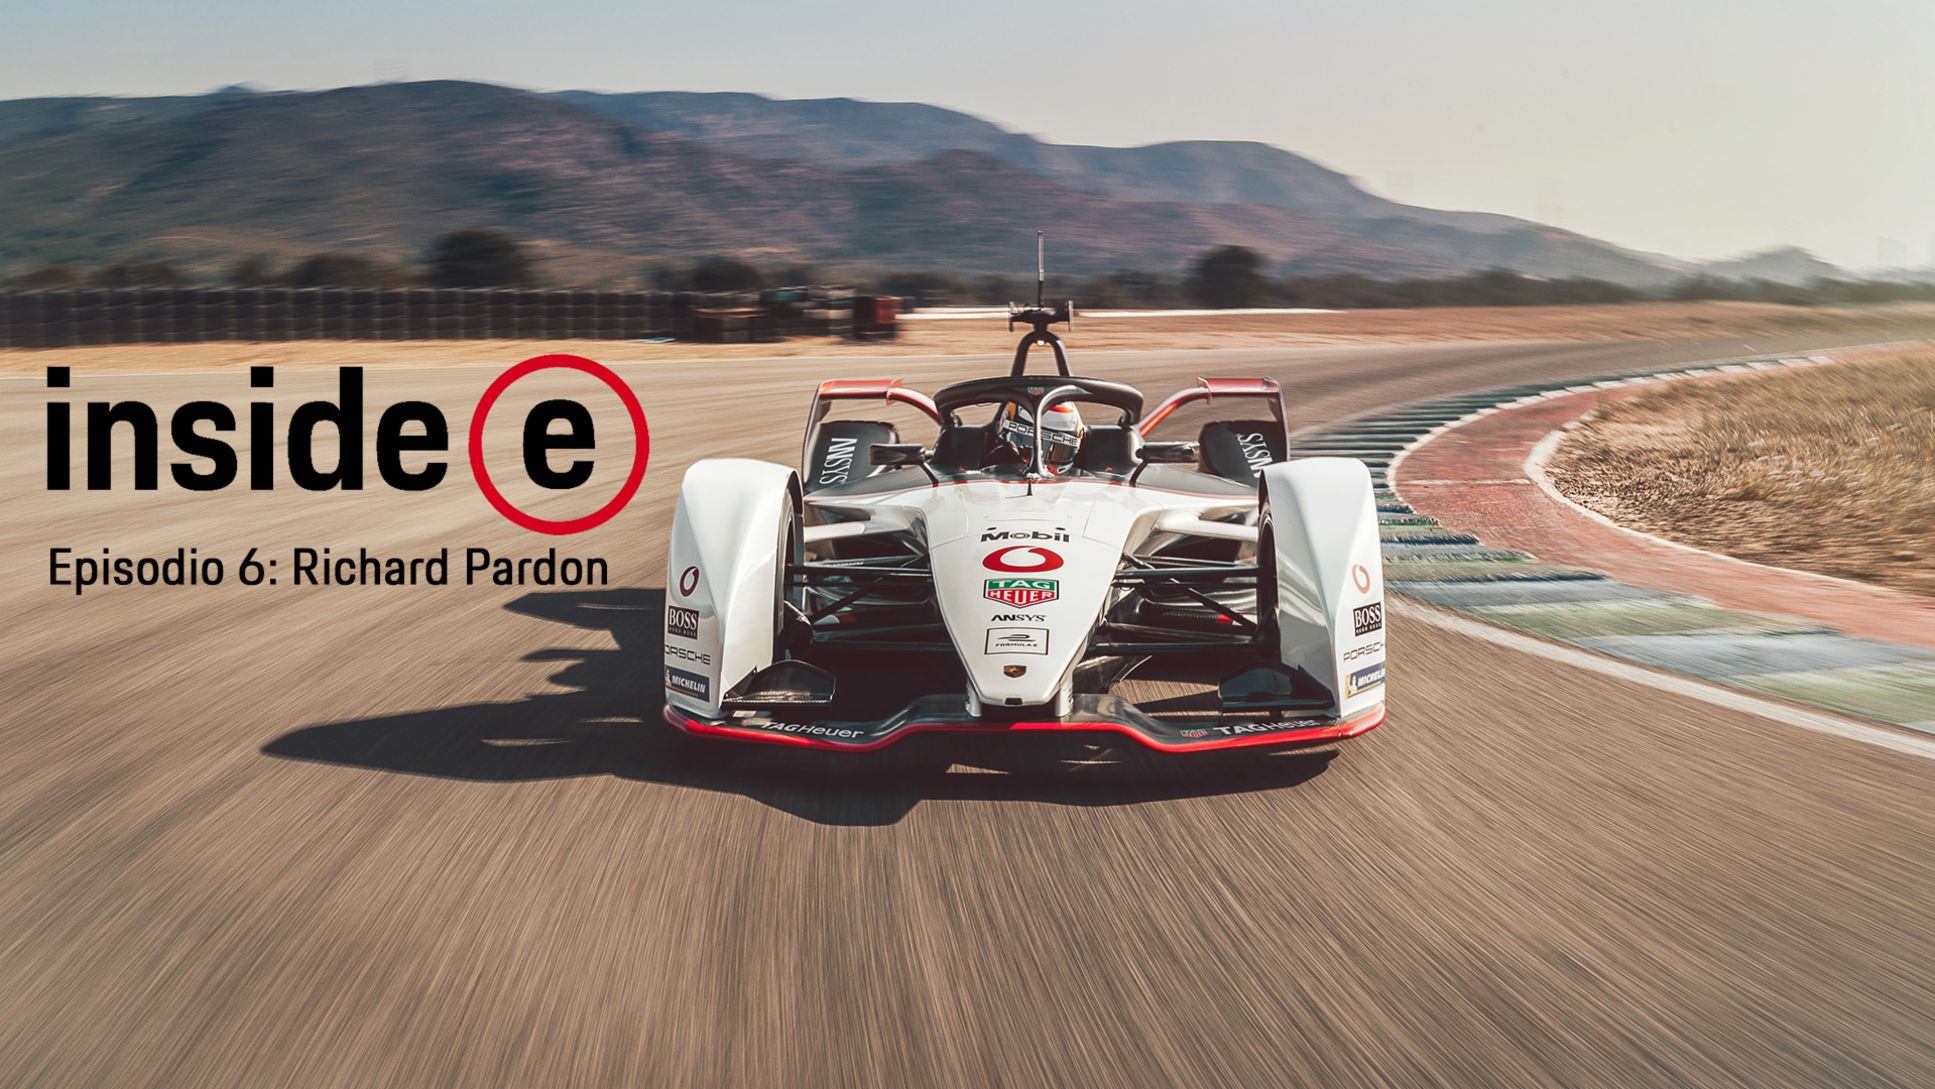  Podcast “Inside E”, episodio 6 con Richard Pardon, 2020, Porsche AG